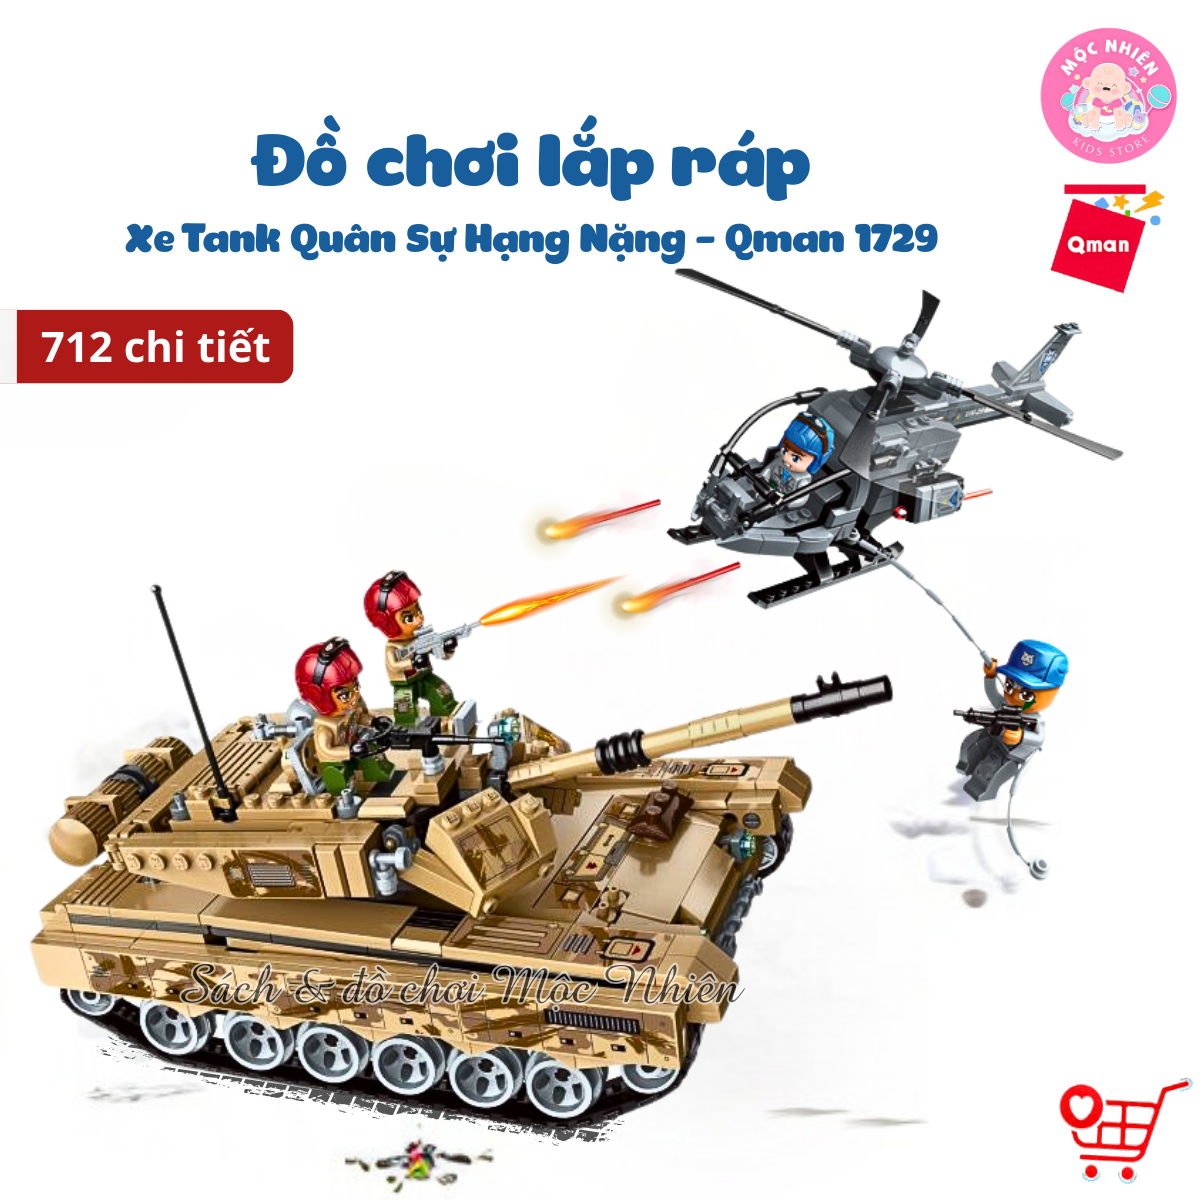 Hình ảnh Đồ chơi lắp ráp, xếp hình Qman 1729 - Xe Tank Quân Sự Hạng Nặng 712 Chi Tiết - Có 4 Minifigures Cho Trẻ Từ 6 Tuổi